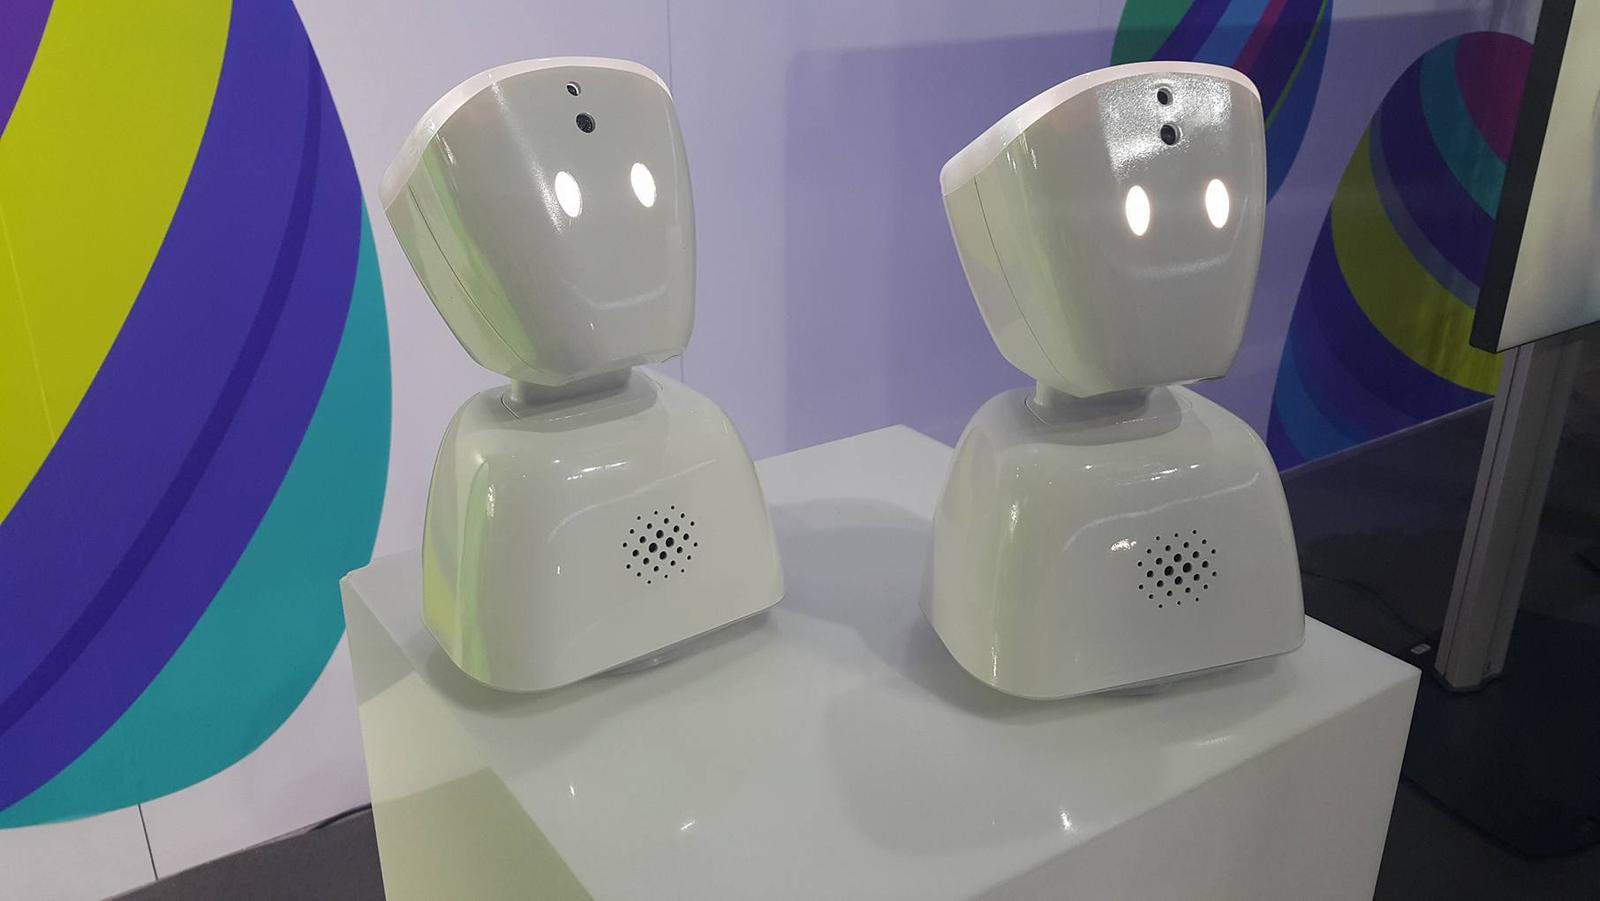 Roboter vil hjelpe syke barn |  KaunoDiena.lt